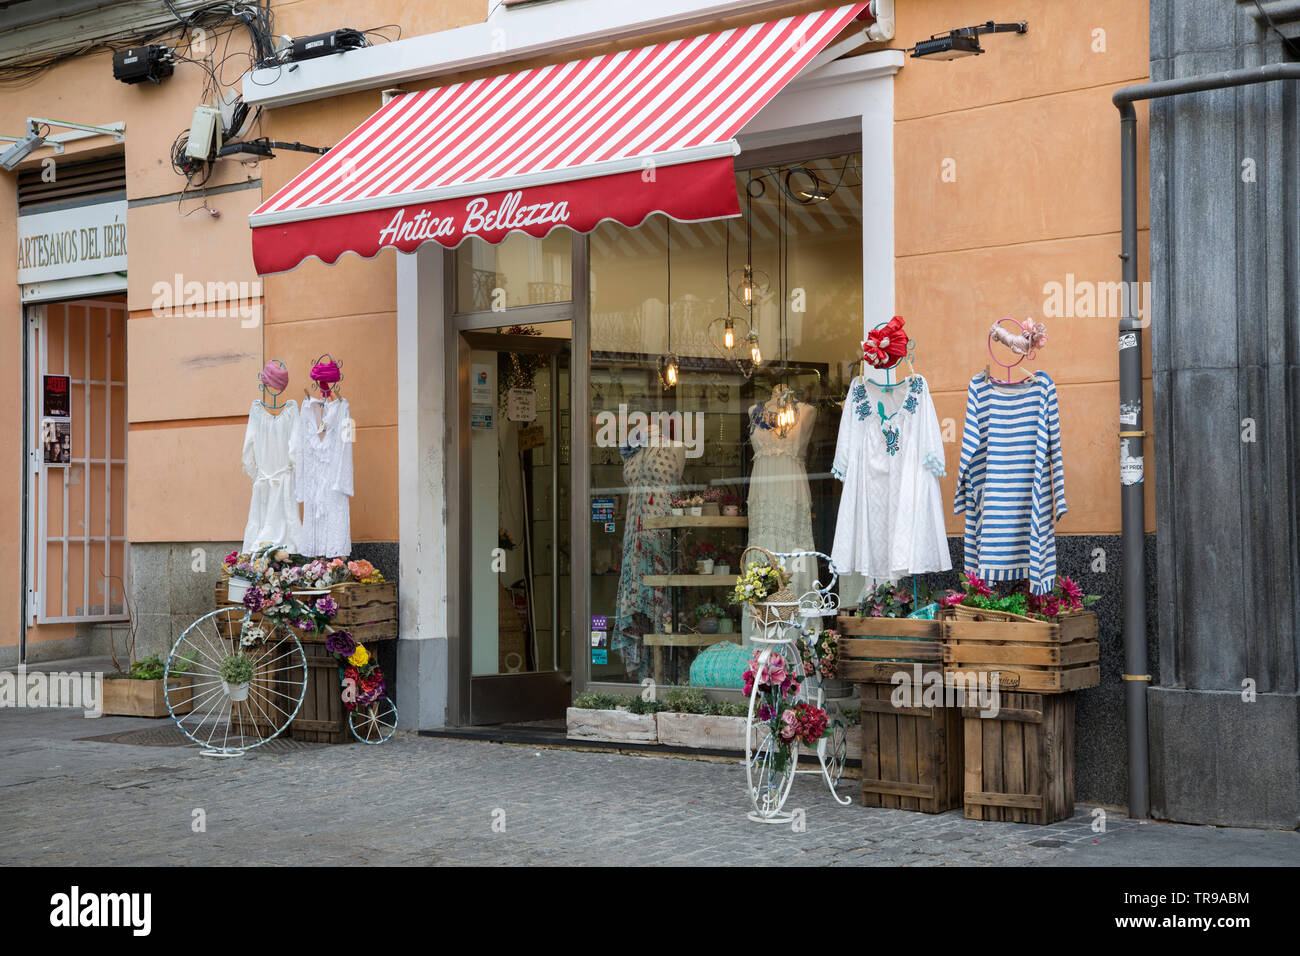 Tienda de ropa Antica Bellezza, Chueca, Madrid, España Fotografía de stock  - Alamy